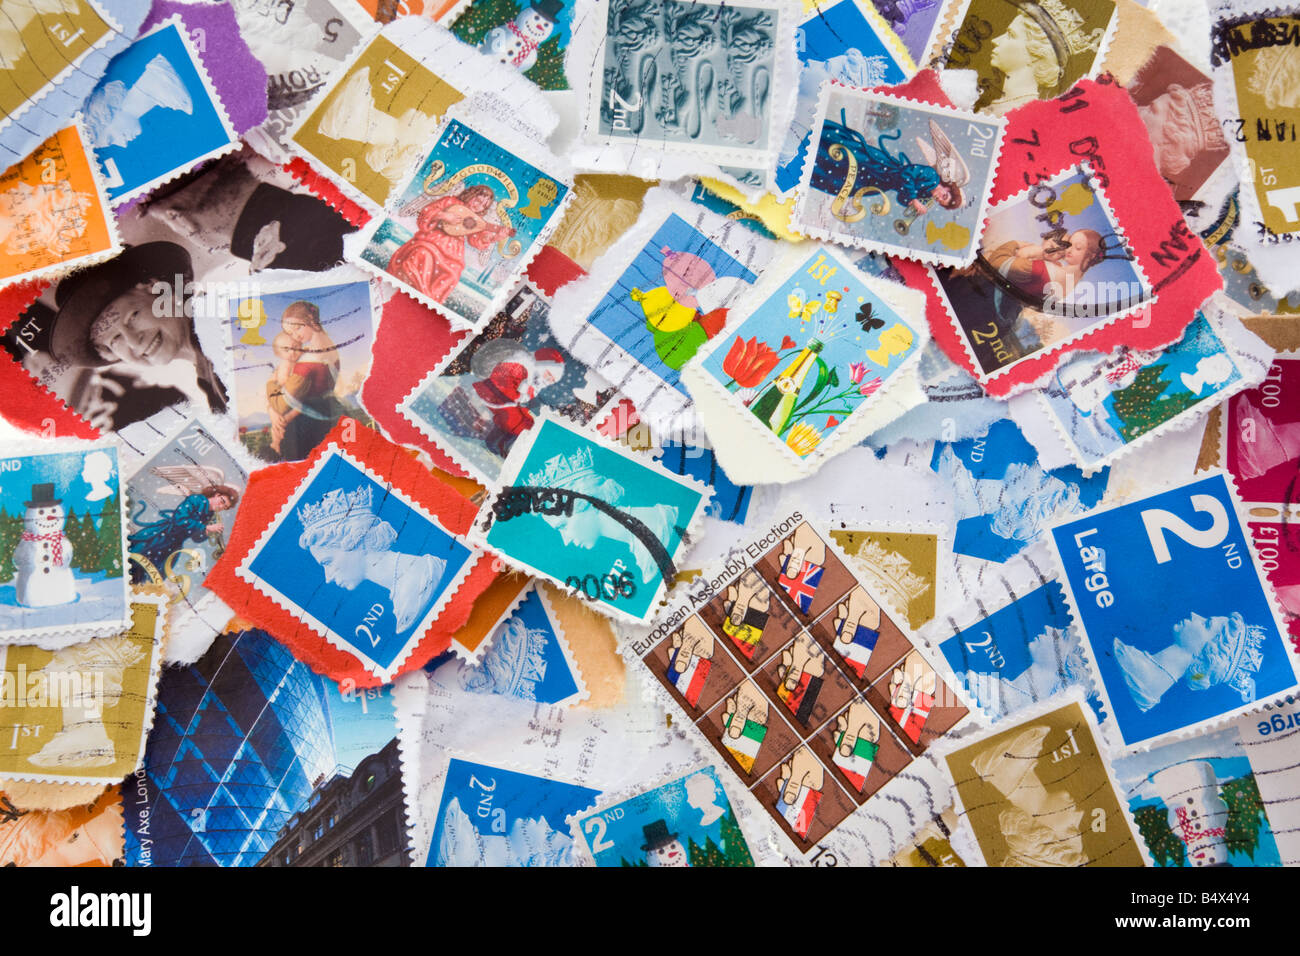 Une sélection colorée de divers occasion British Royal Mail timbres-poste en close-up. Angleterre Royaume-uni Grande-Bretagne Banque D'Images